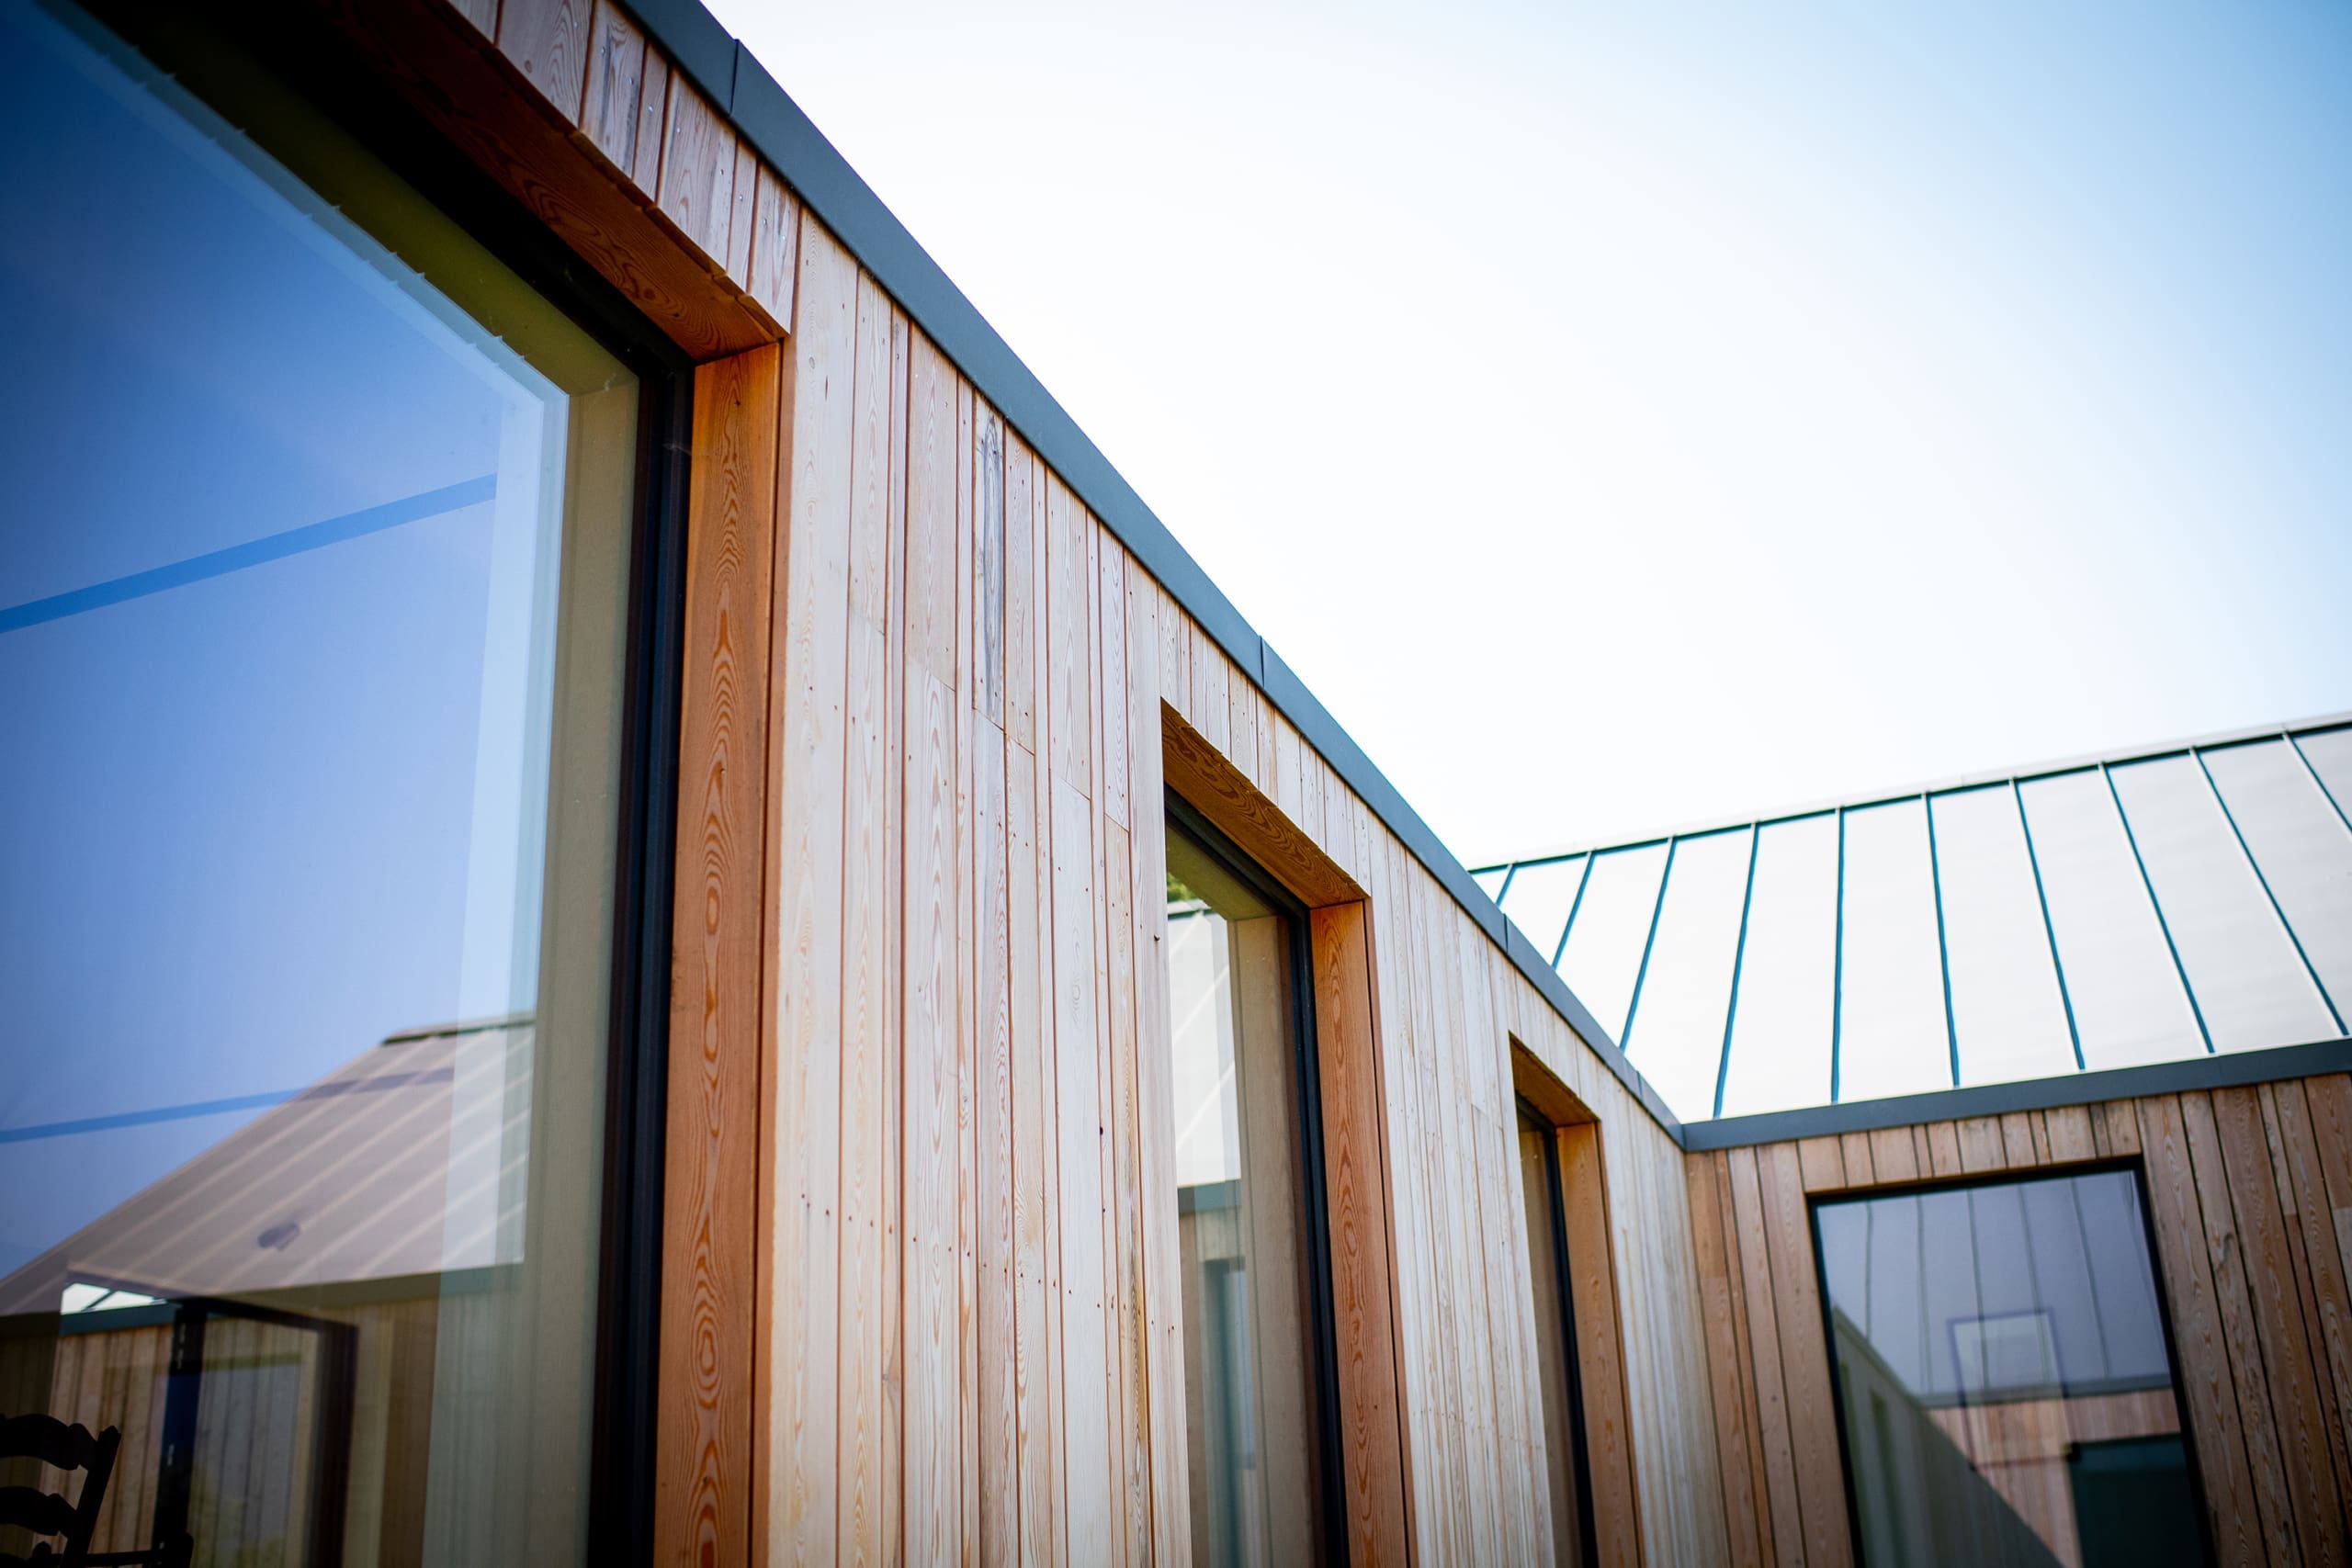 Wooden clad building with aluminium windows.